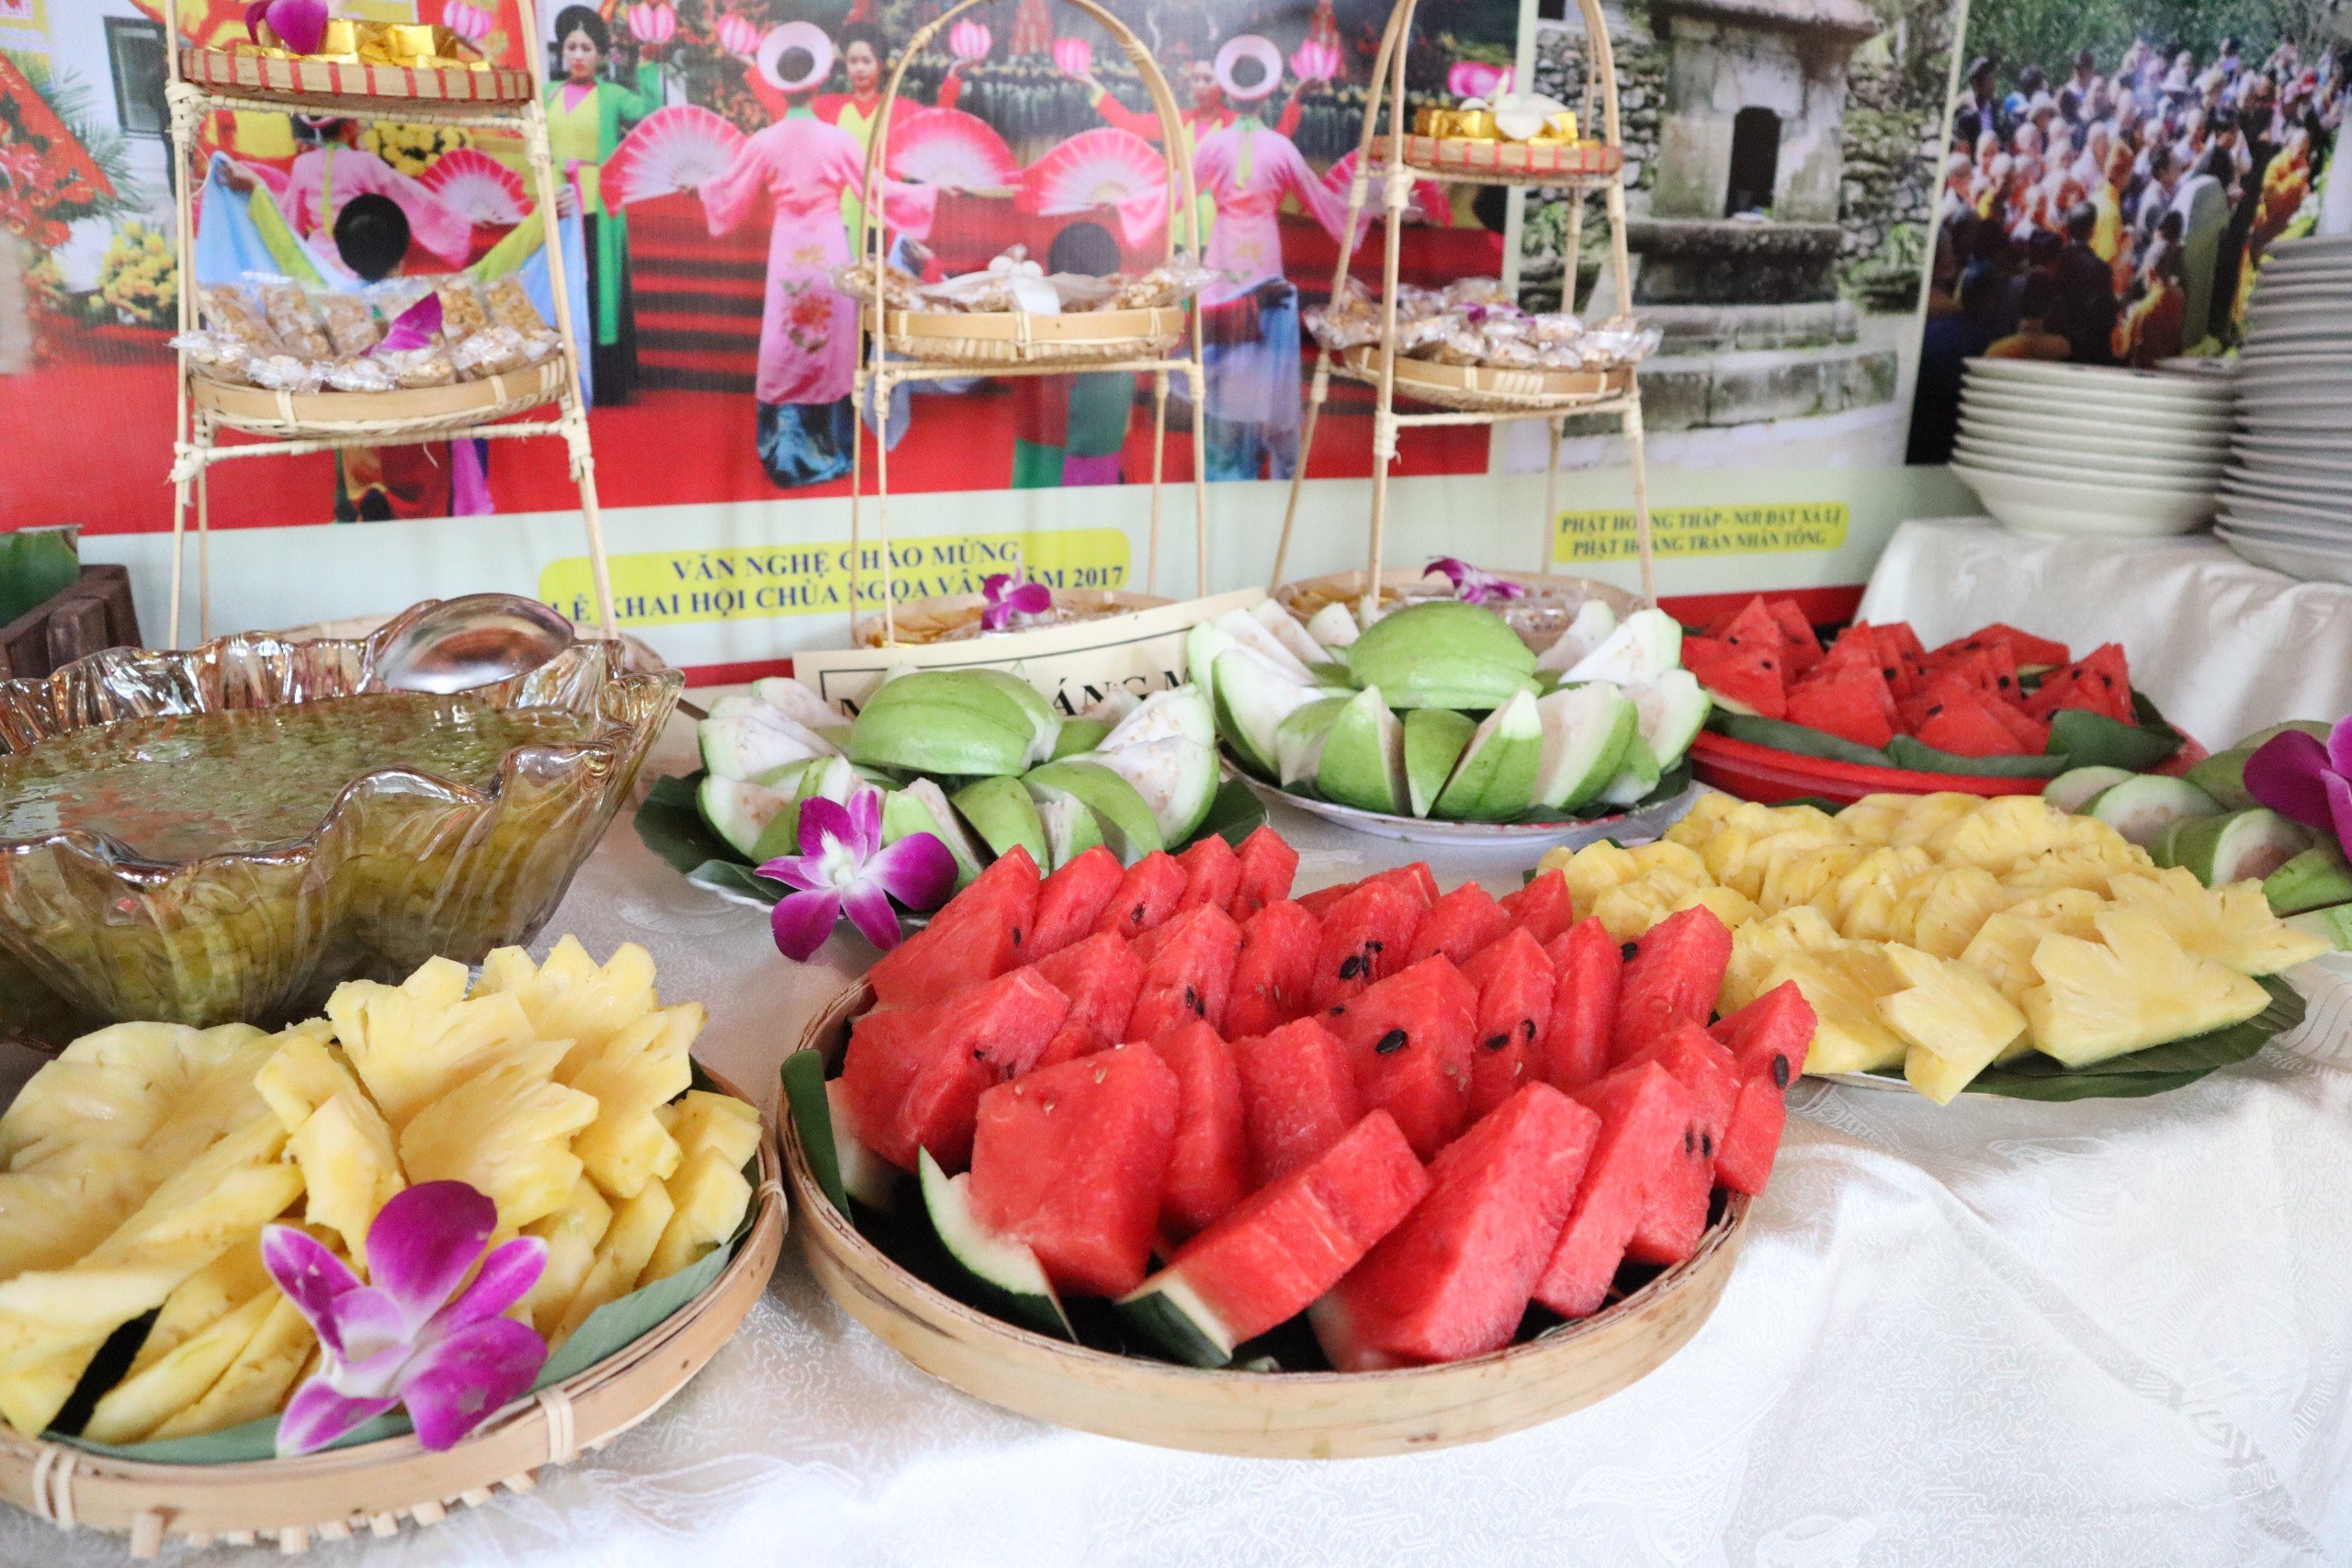 Mới lạ tiệc buffet chay tại chùa Côn Sơn- Ảnh 10.